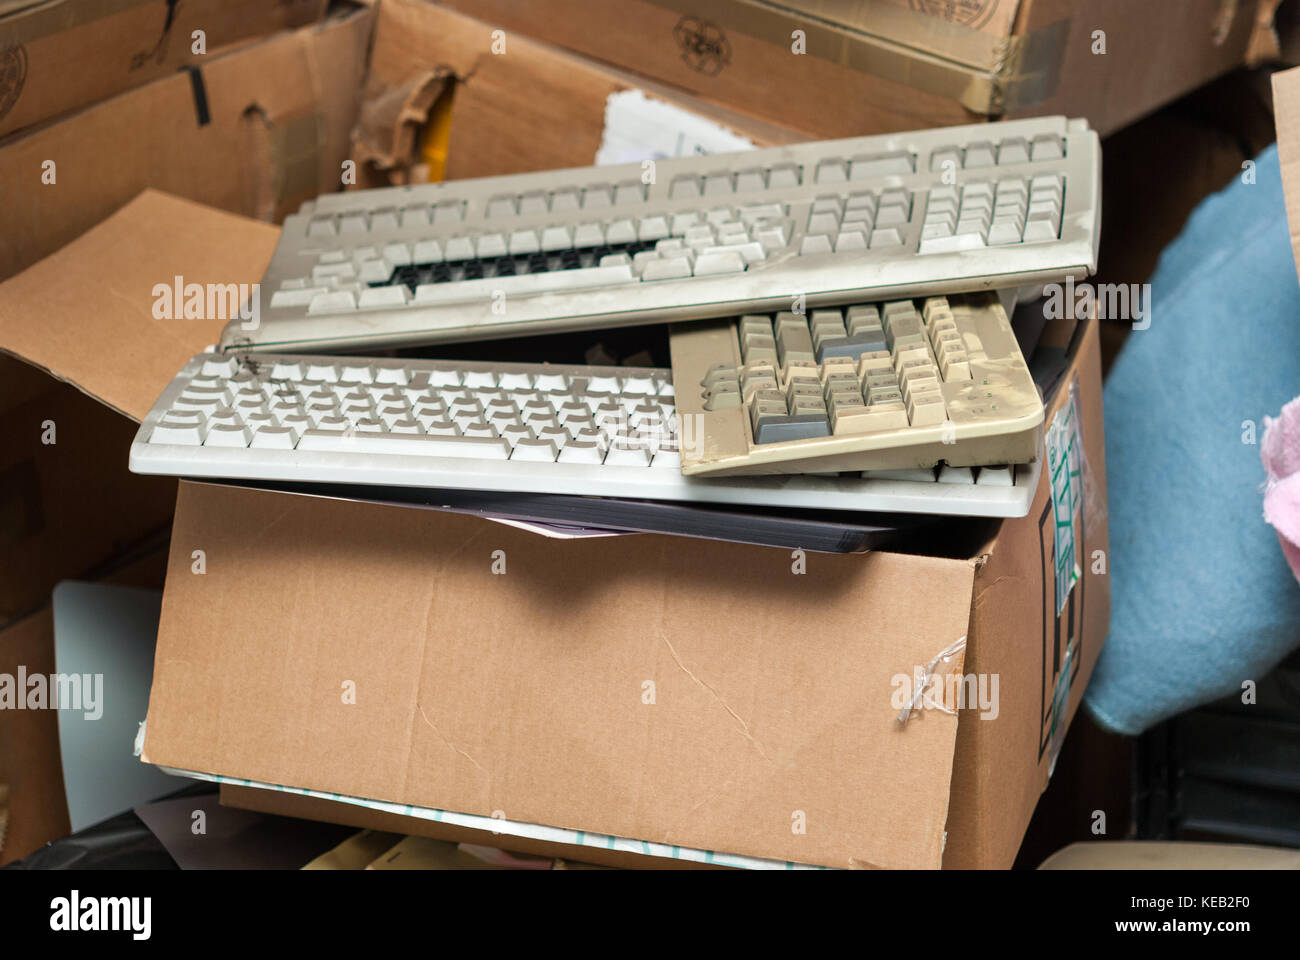 Antiguos teclados de ordenador PC rotas Foto de stock